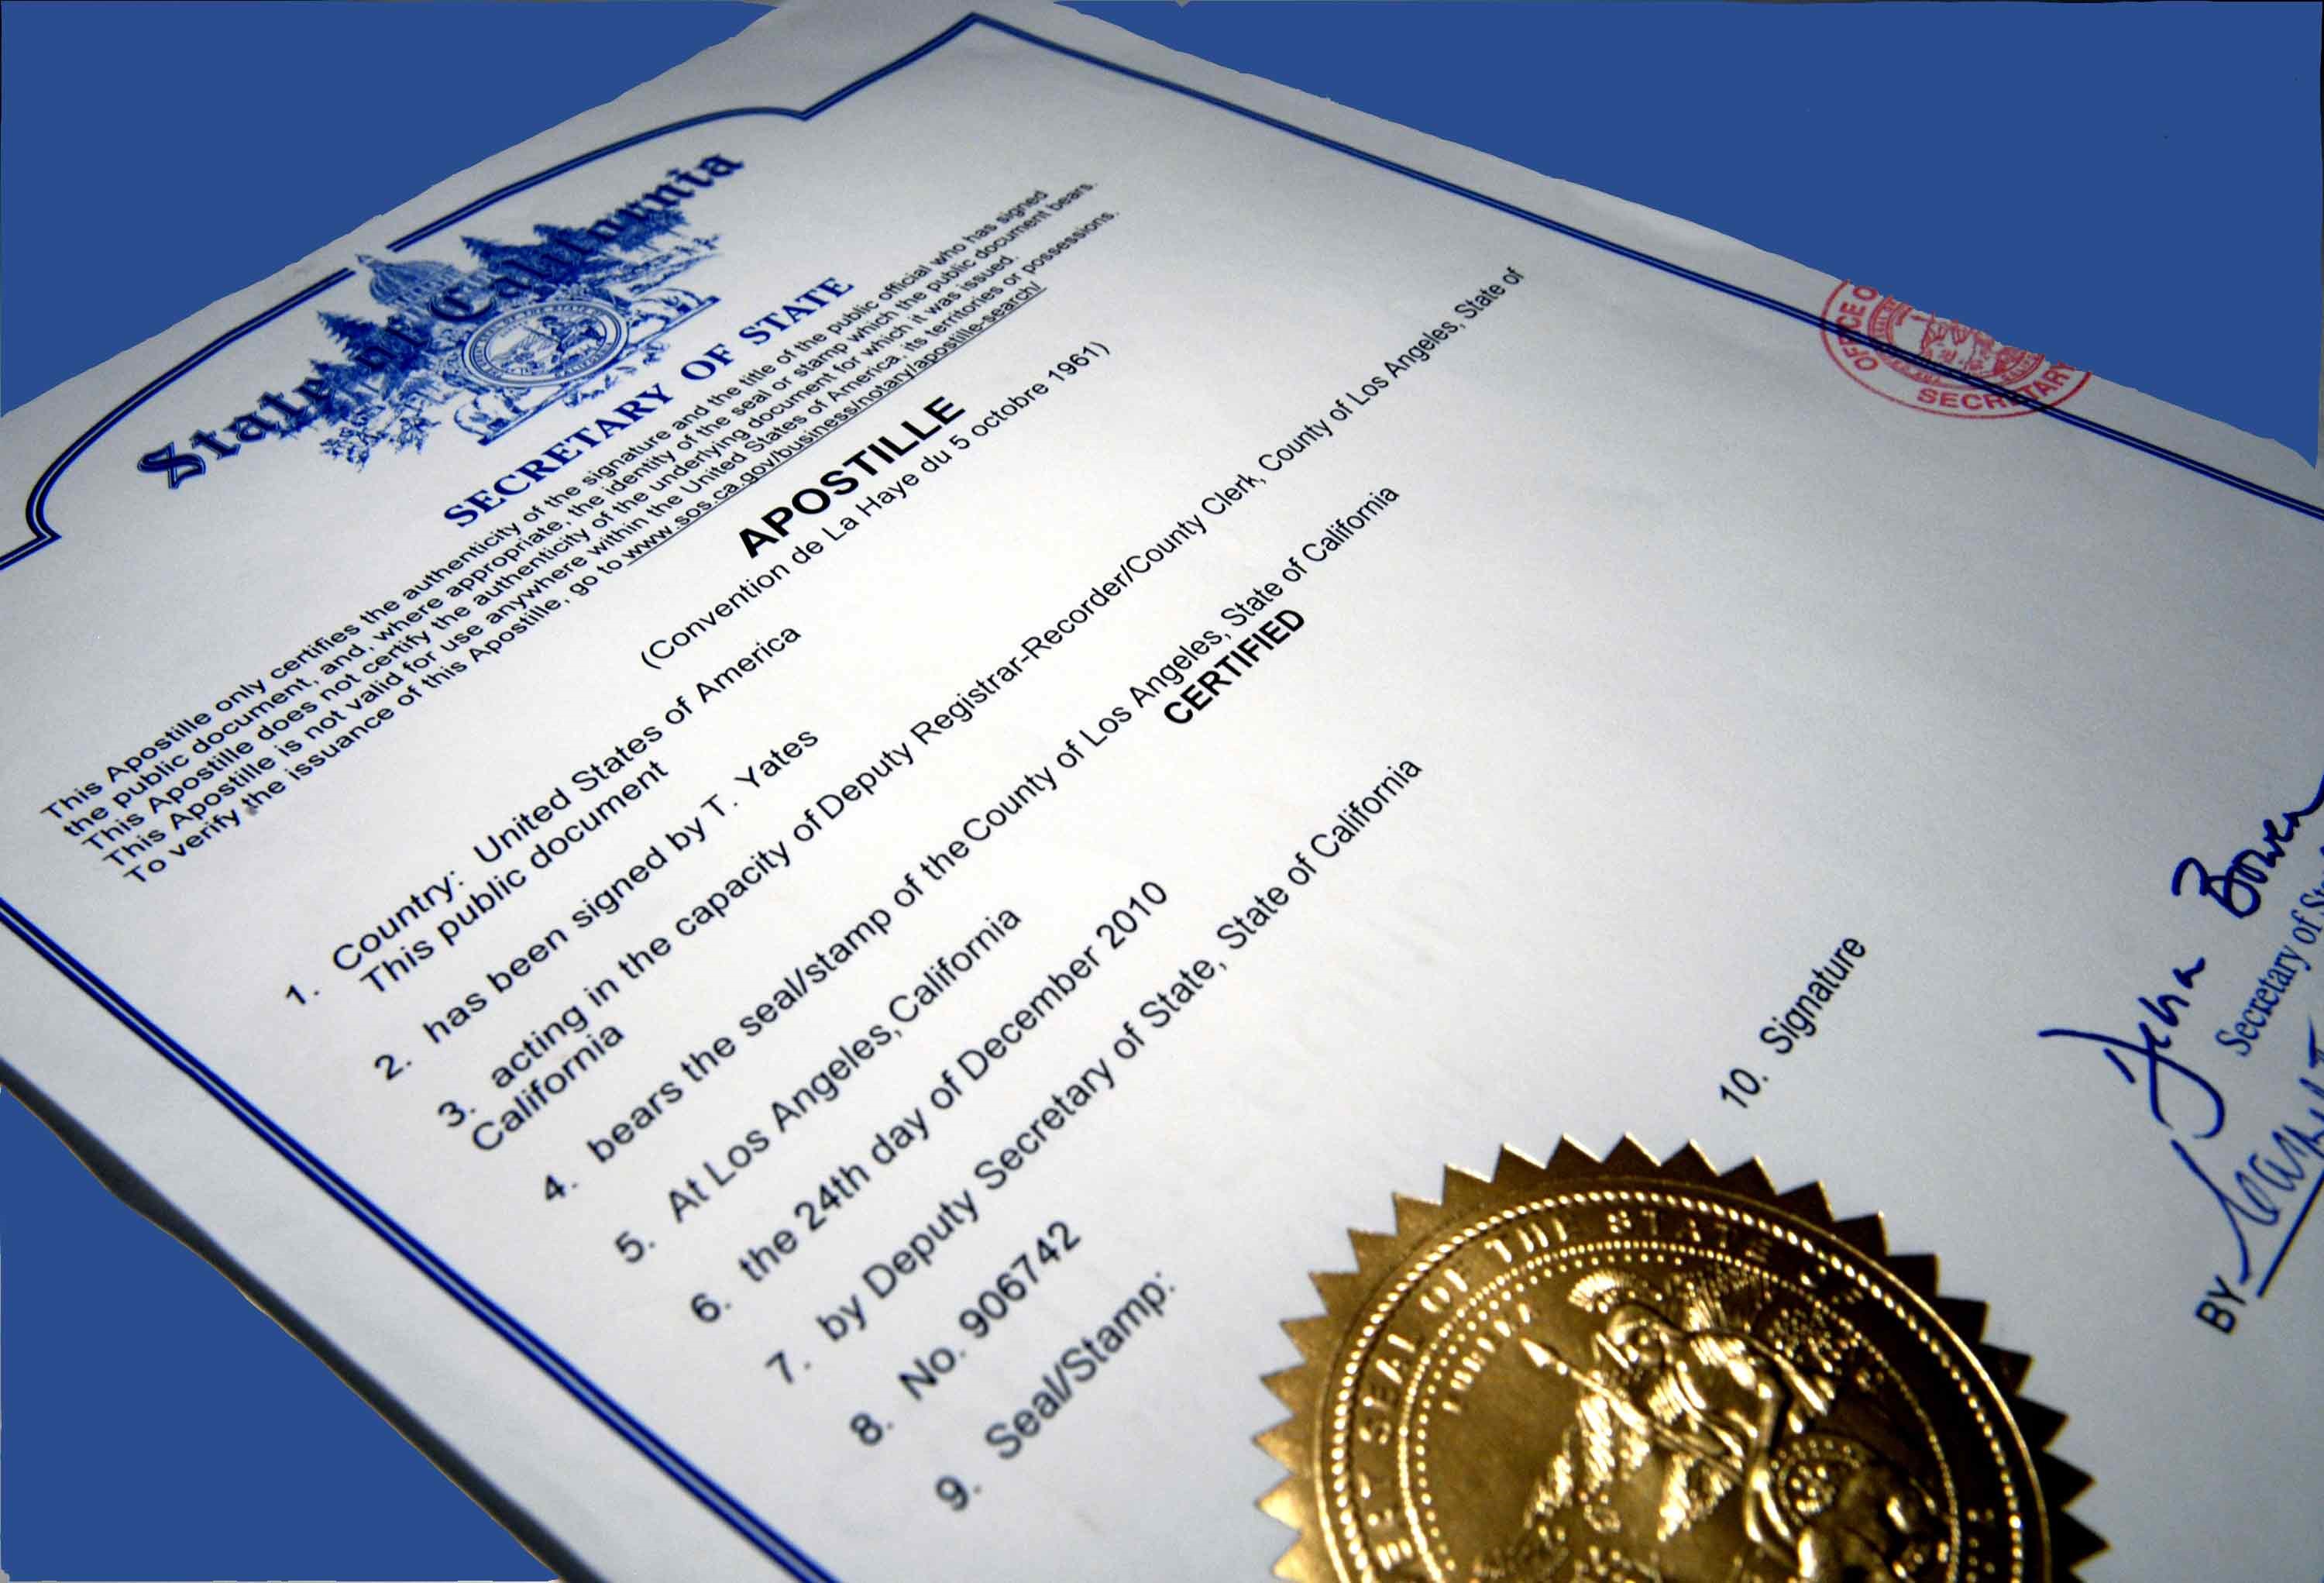 Comprehensive information on Apostille certification